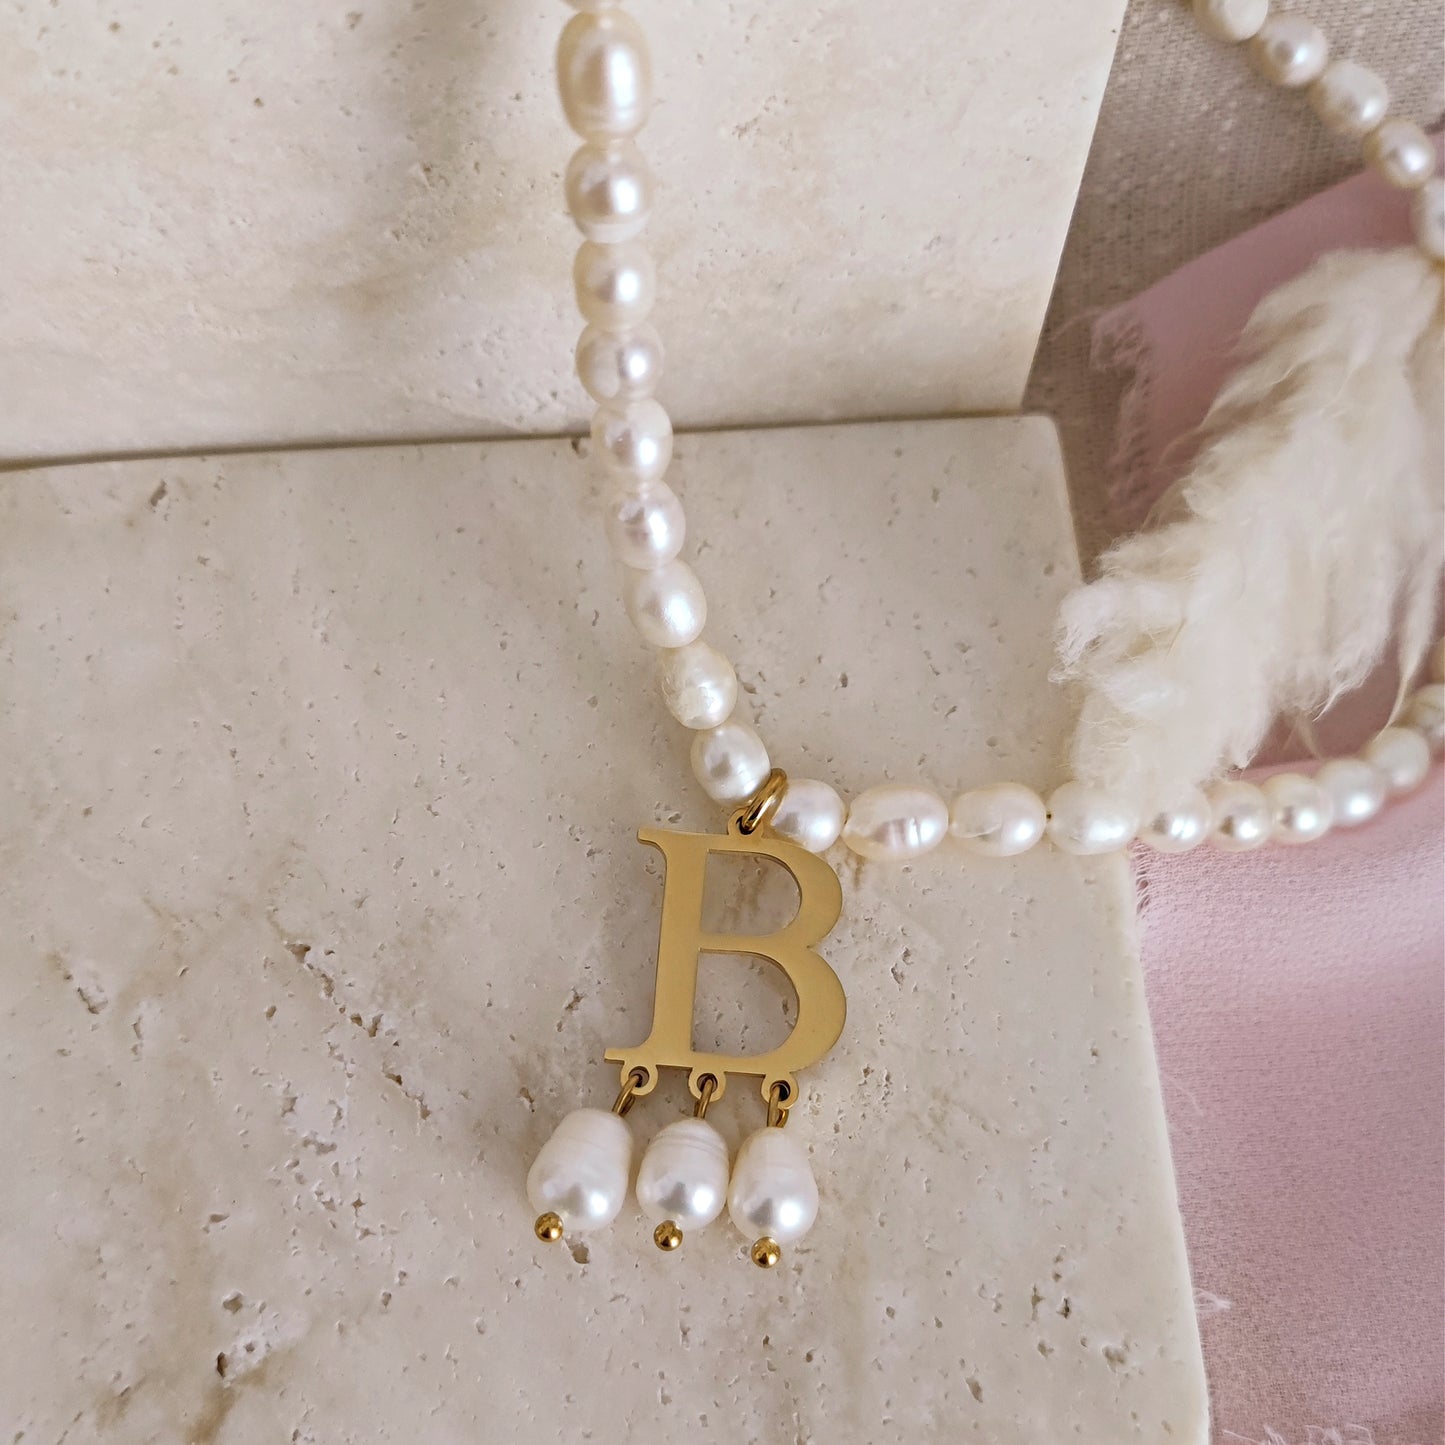 Anne Boleyn "B" initial necklace with freshwater pearls